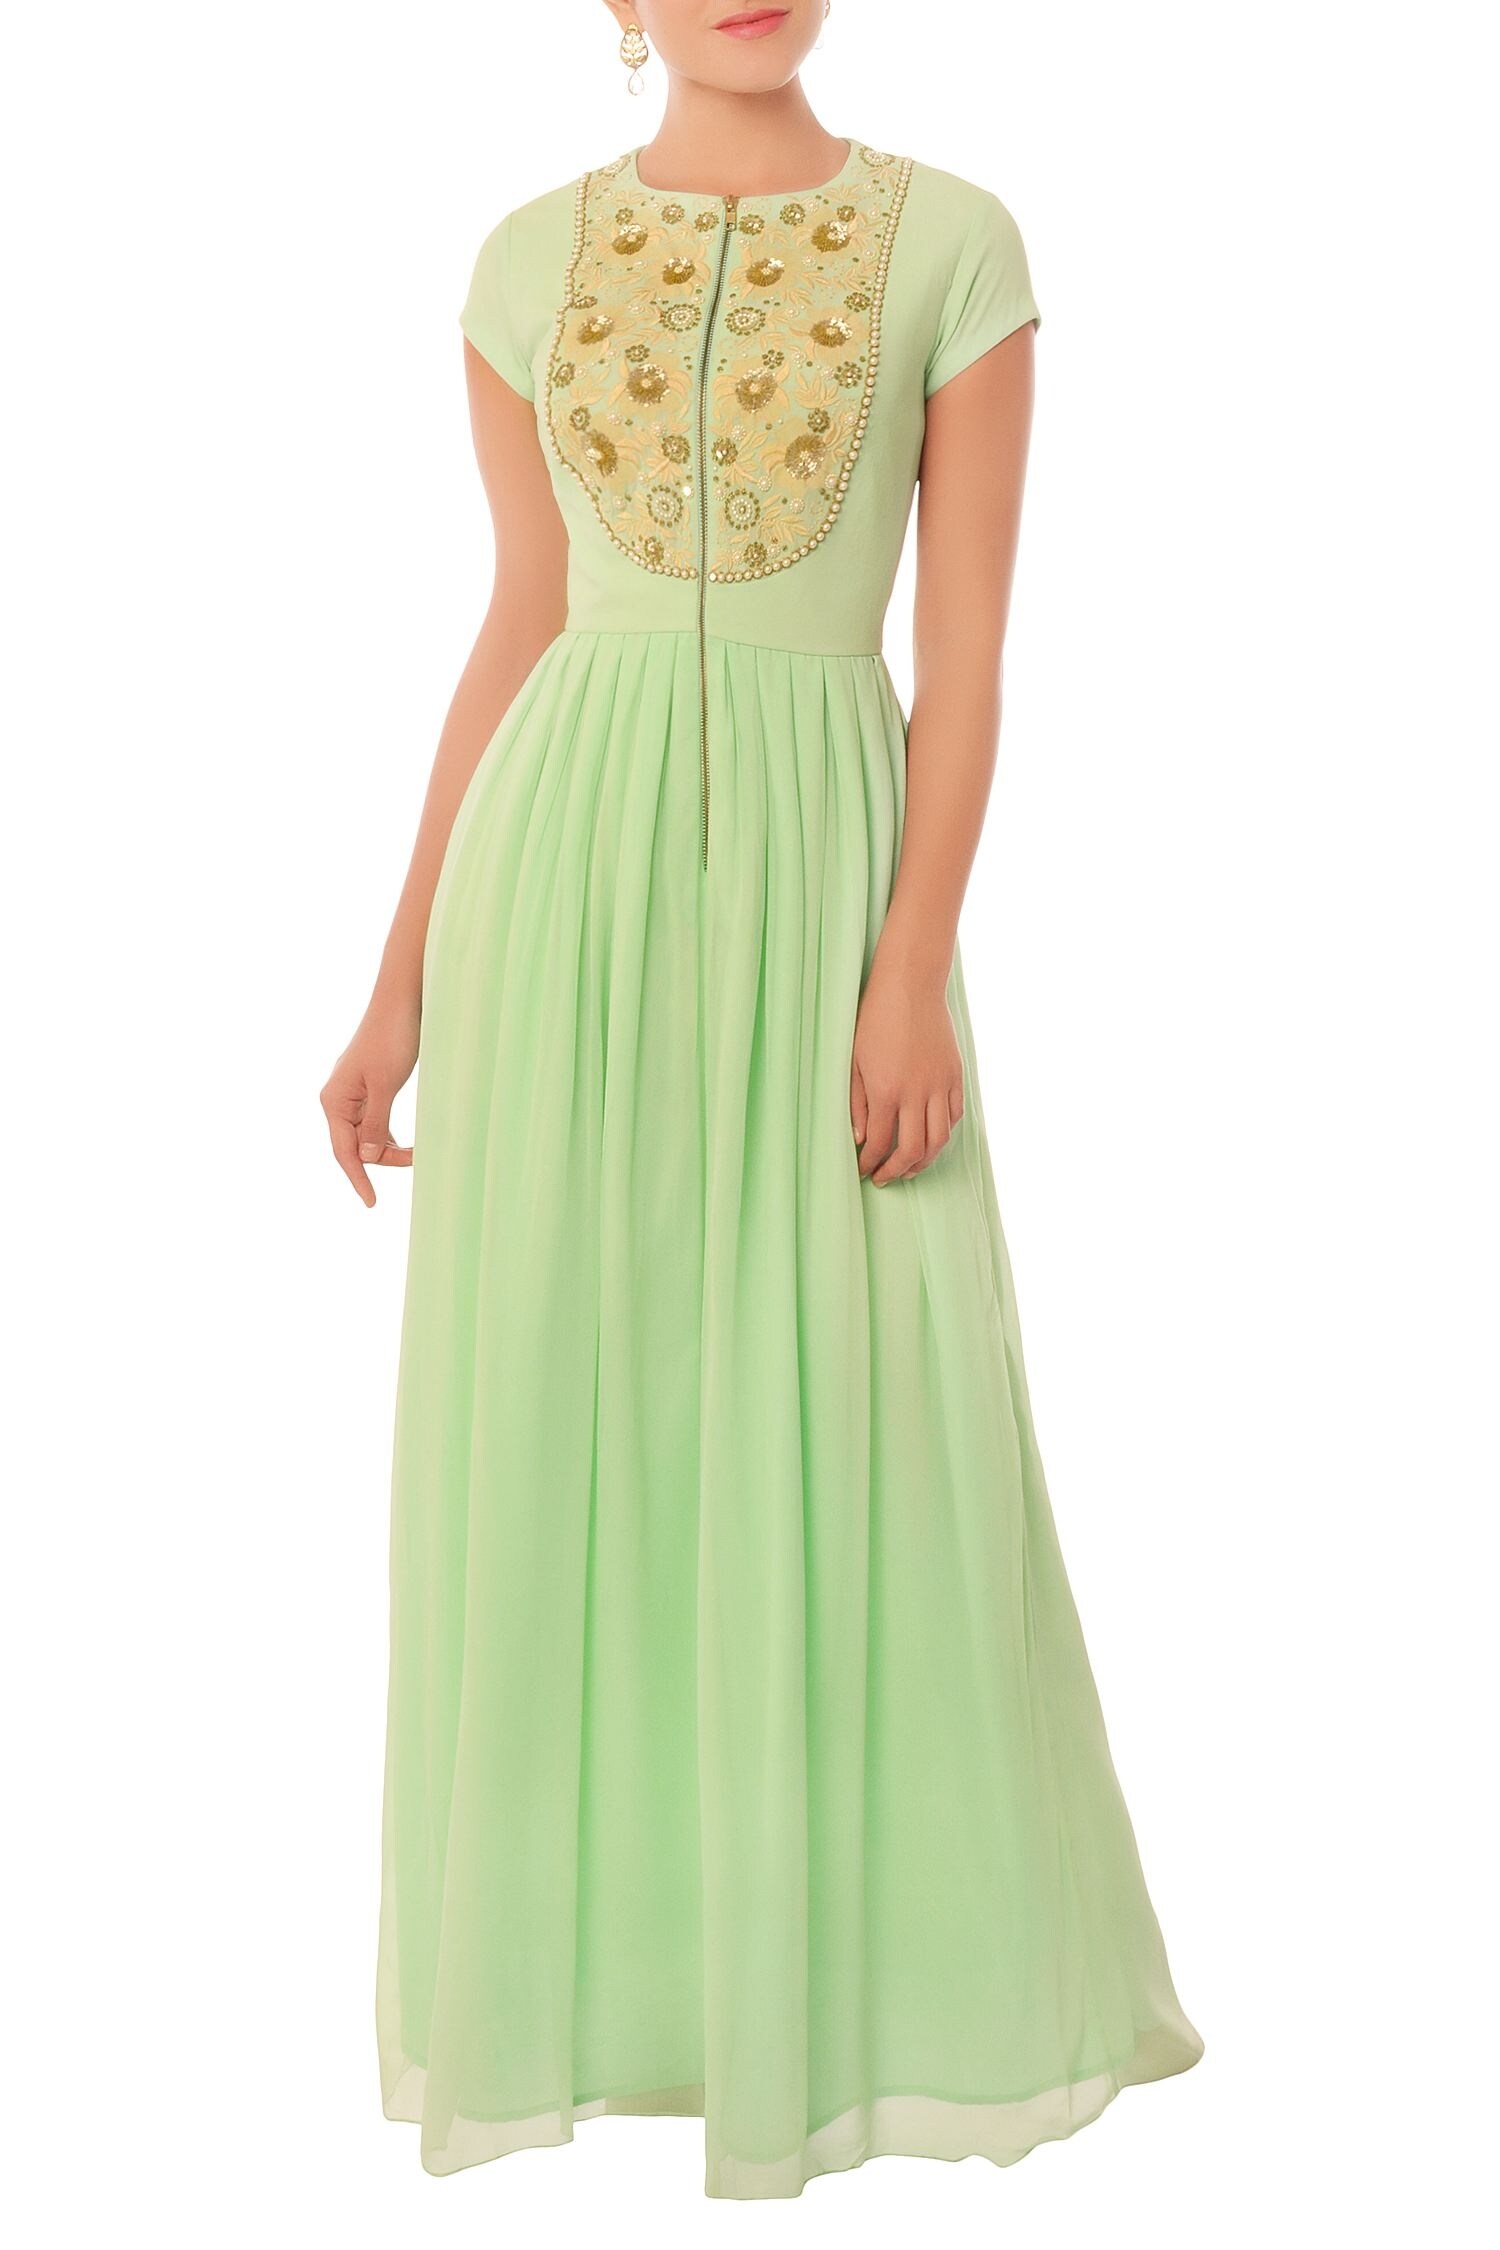 Light Green Net Cutdana Evening Gown-GW681 | Indian wedding gowns, Boho dresses  long, Designer evening gowns